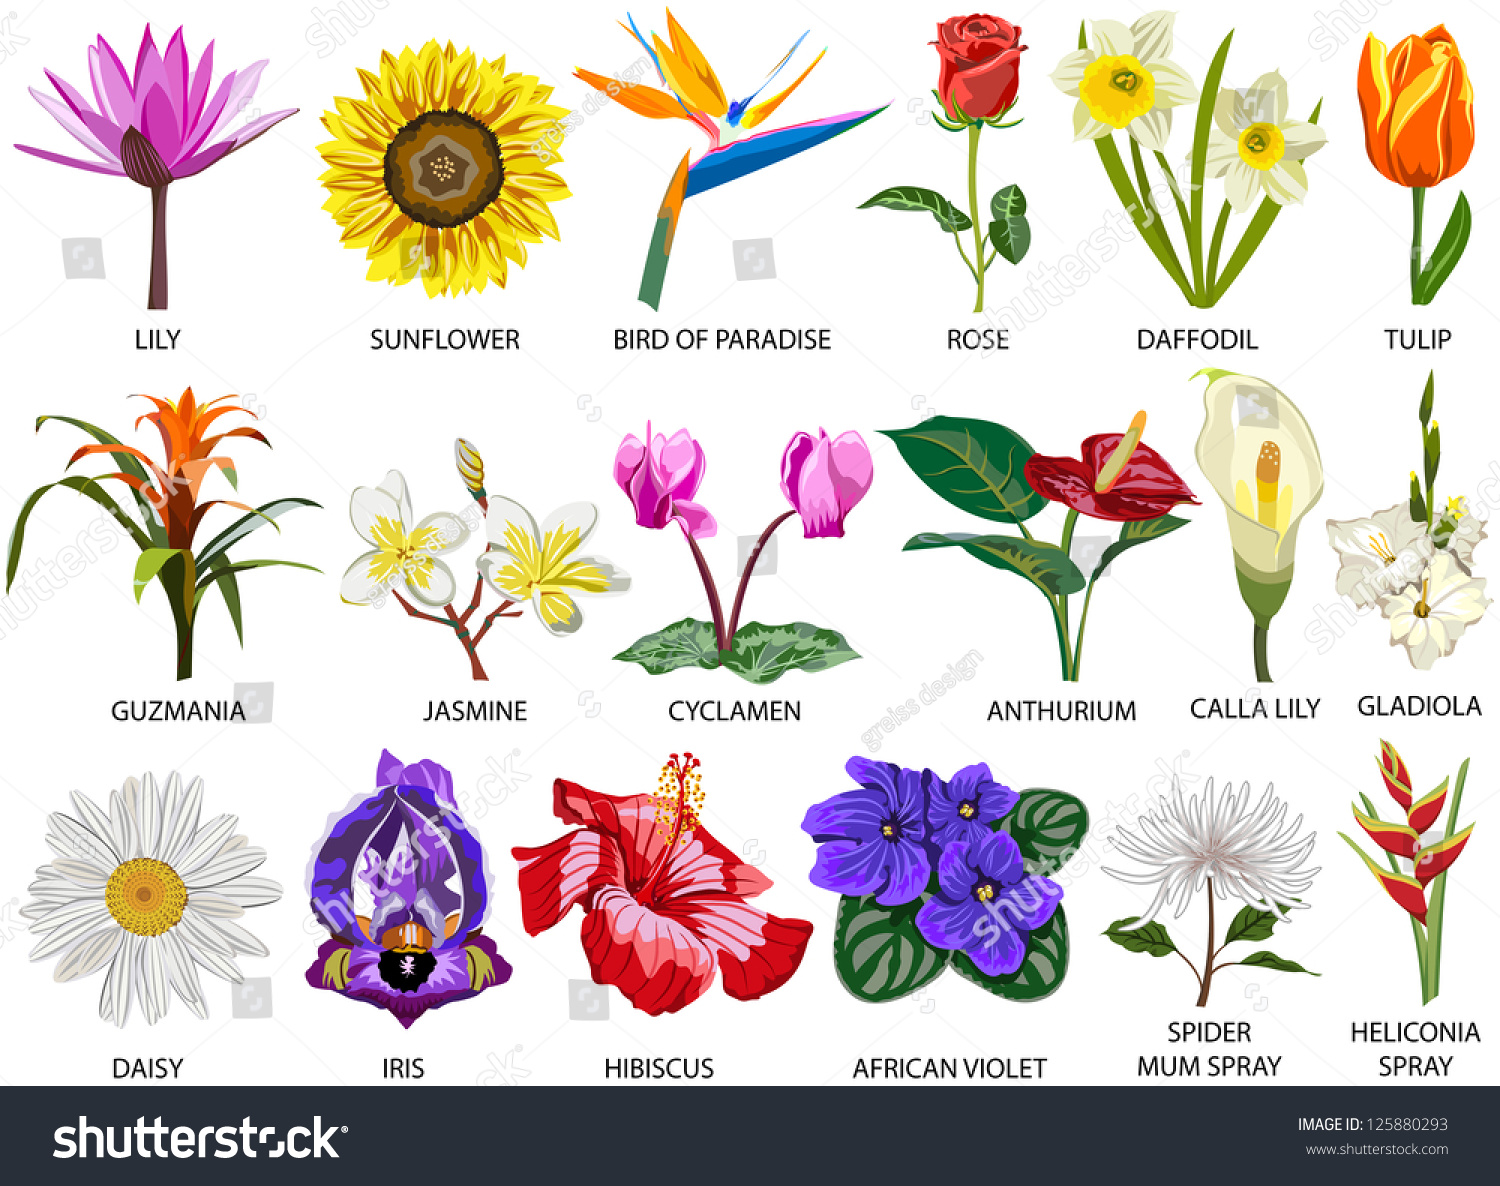 Название цветка с большой буквы. Цветы названия. Названия цветов растений. Название всех видов цветов. Цветы разных видов и их названия.